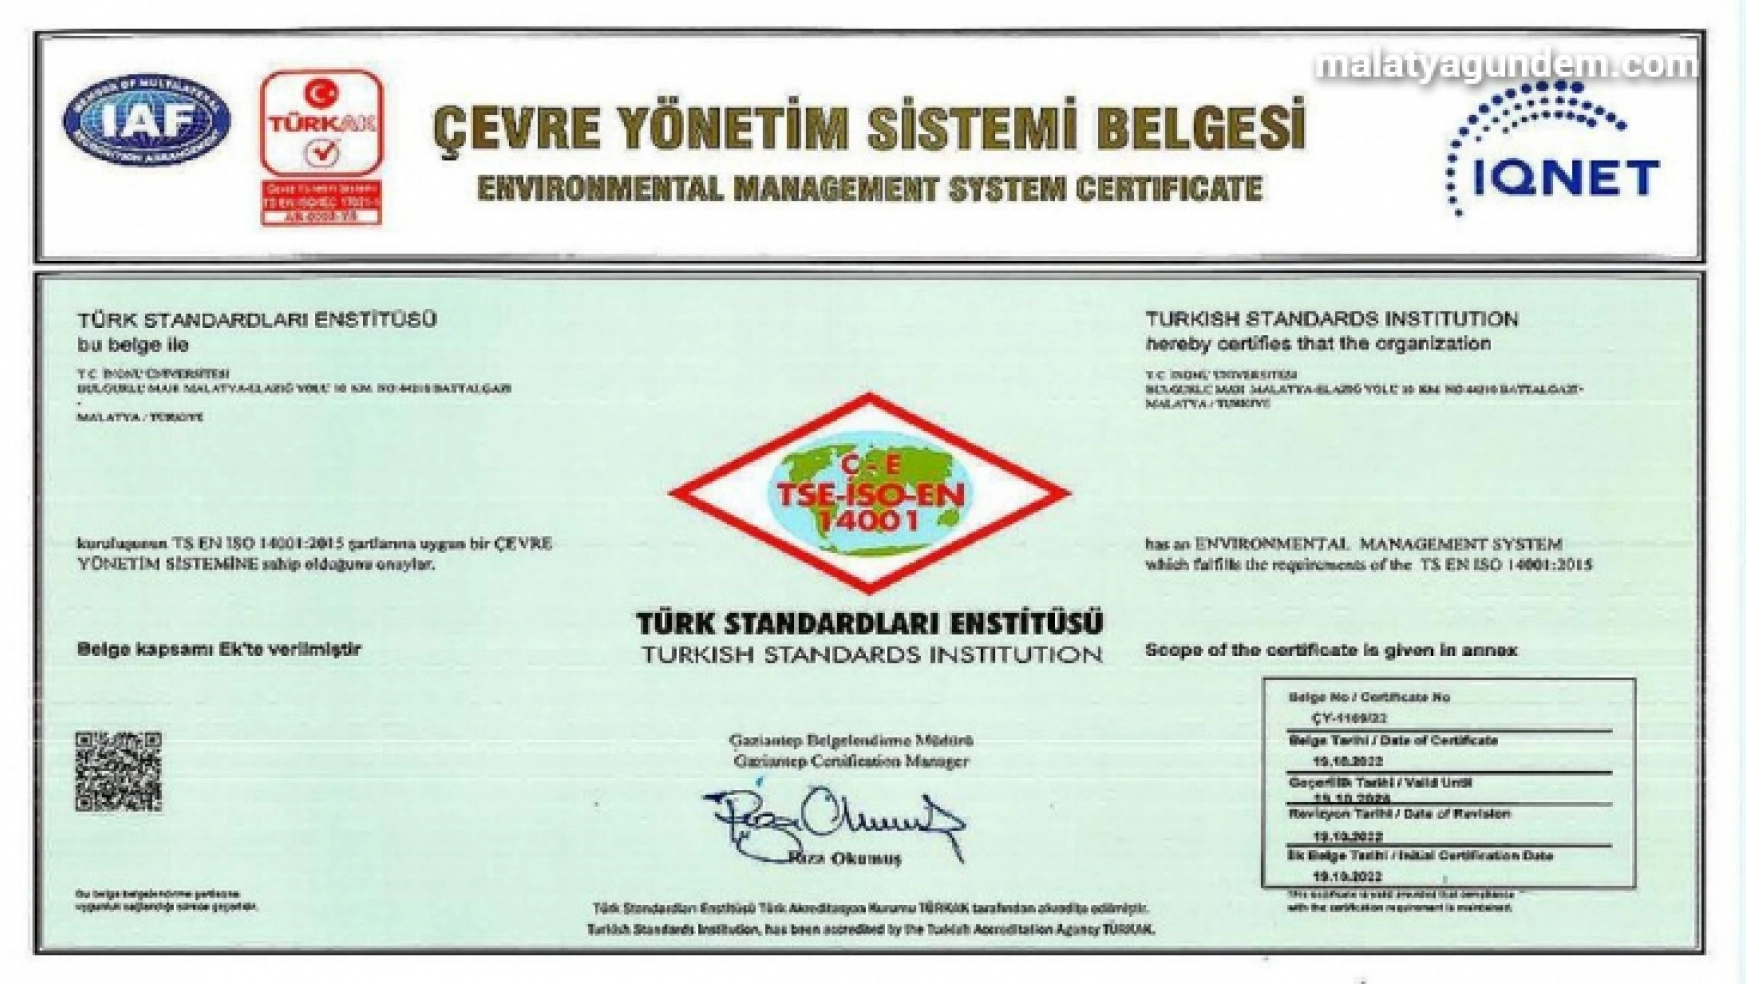 İnönü Üniversitesi'ne Çevre Yönetim Sistemi belgesi